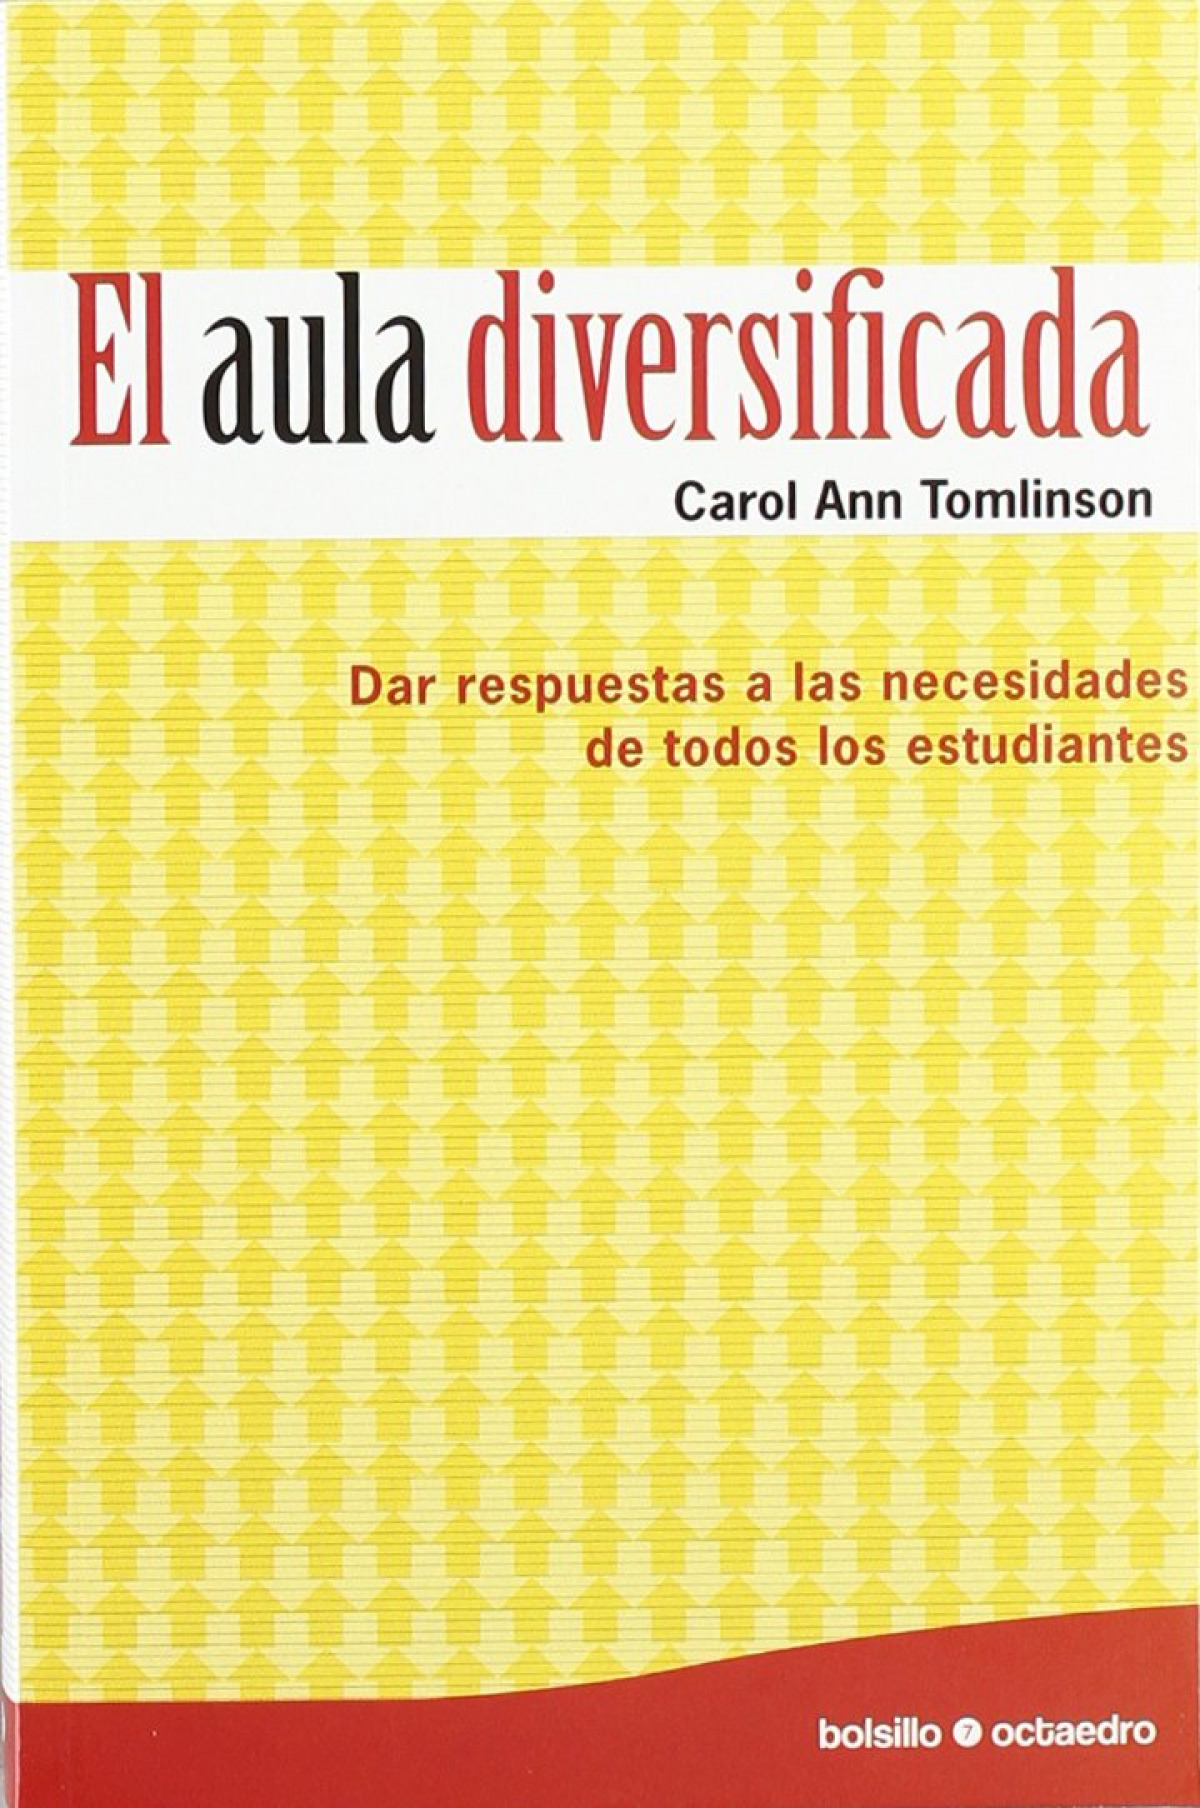 El  aula diversificada (Ed. Bolsillo) Dar respuestas a las necesidades - Tomlinson, Carol Ann